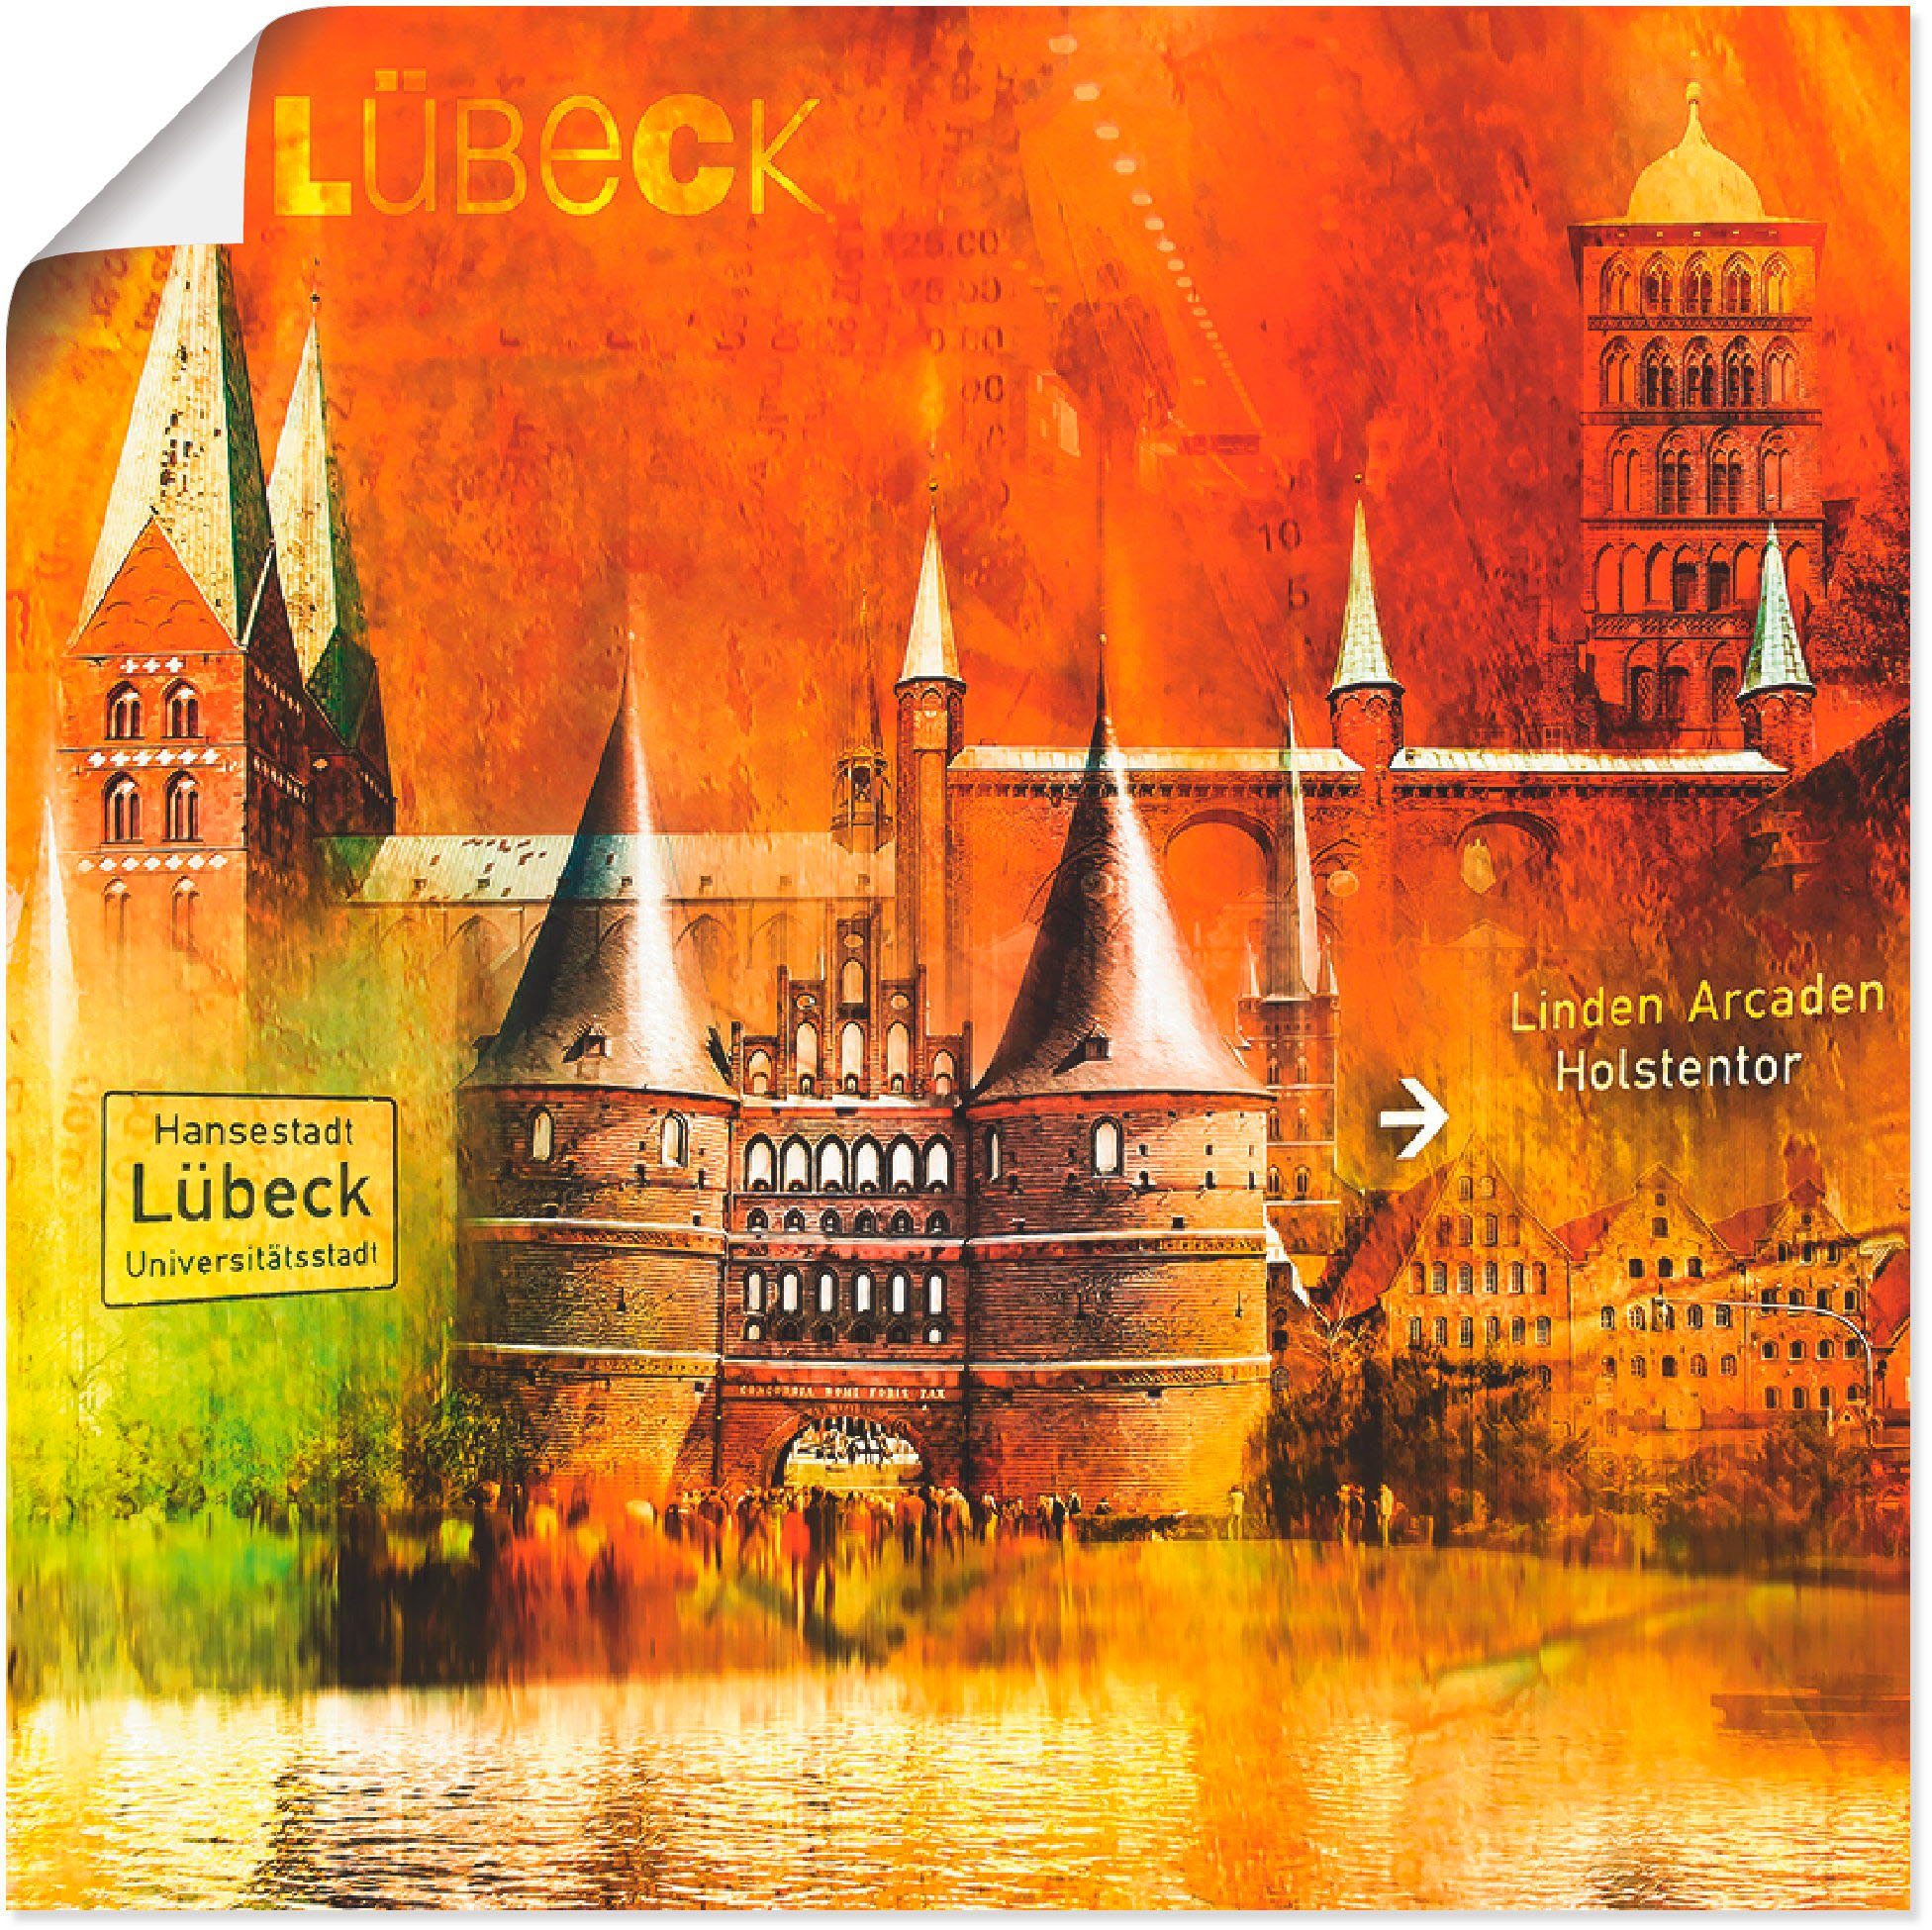 Artland Artprint Lübeck Hanzestad collage 04 in vele afmetingen & productsoorten -artprint op linnen, poster, muursticker / wandfolie ook geschikt voor de badkamer (1 stuk)